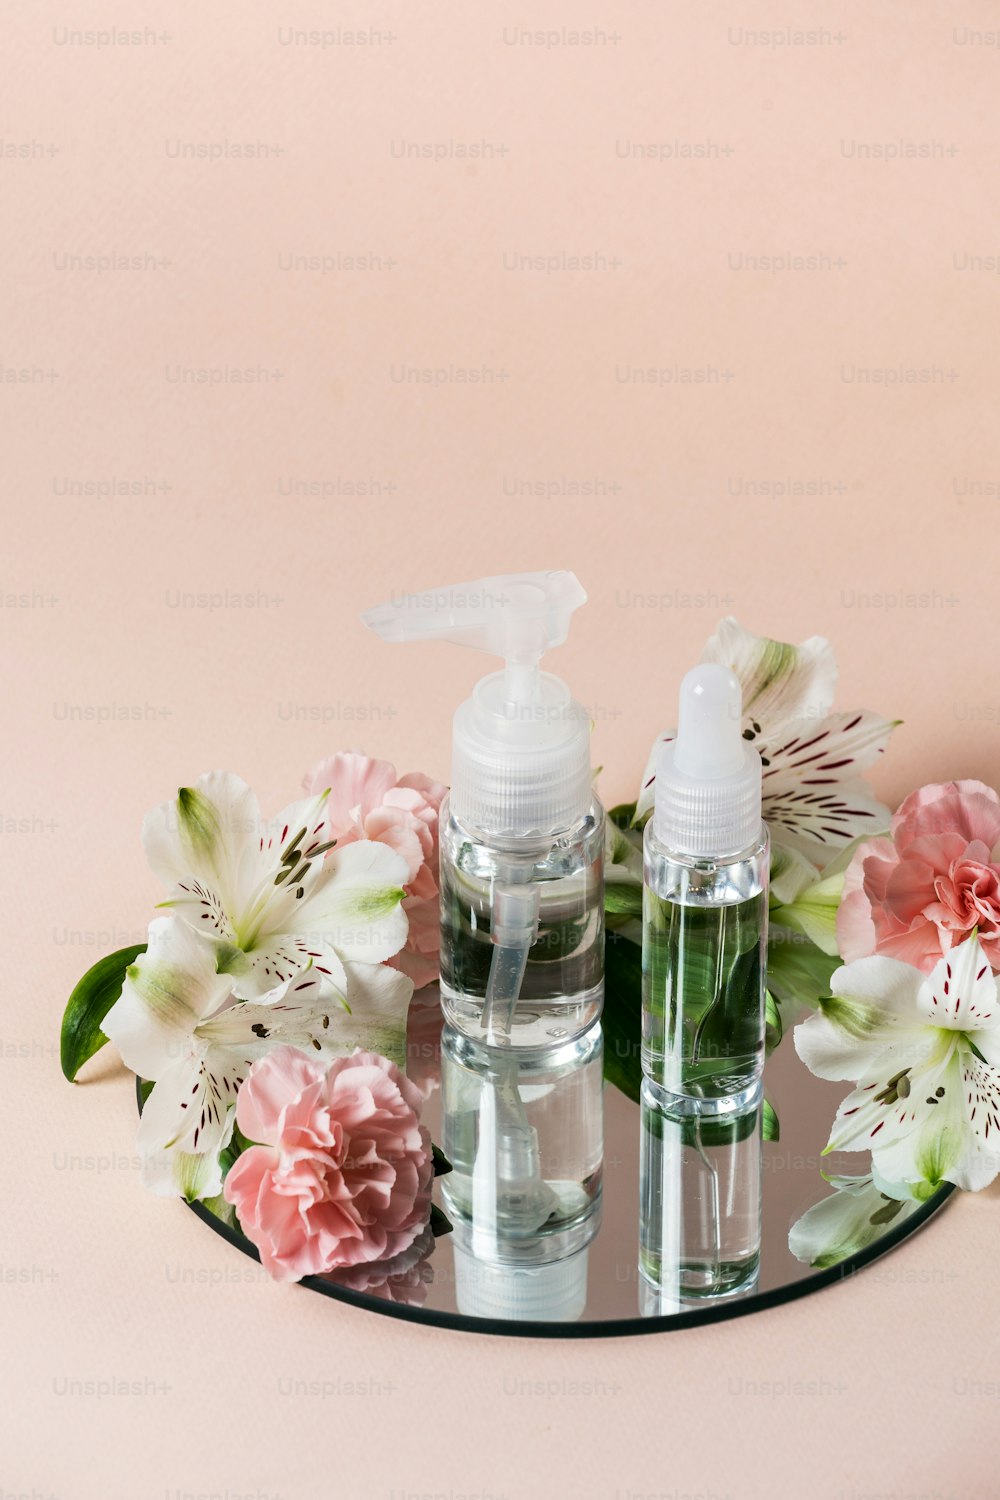 Concept de produit cosmétique biologique. Vue verticale de bouteilles transparentes sur miroir près de fleurs isolées sur fond rose pastel avec espace de copie